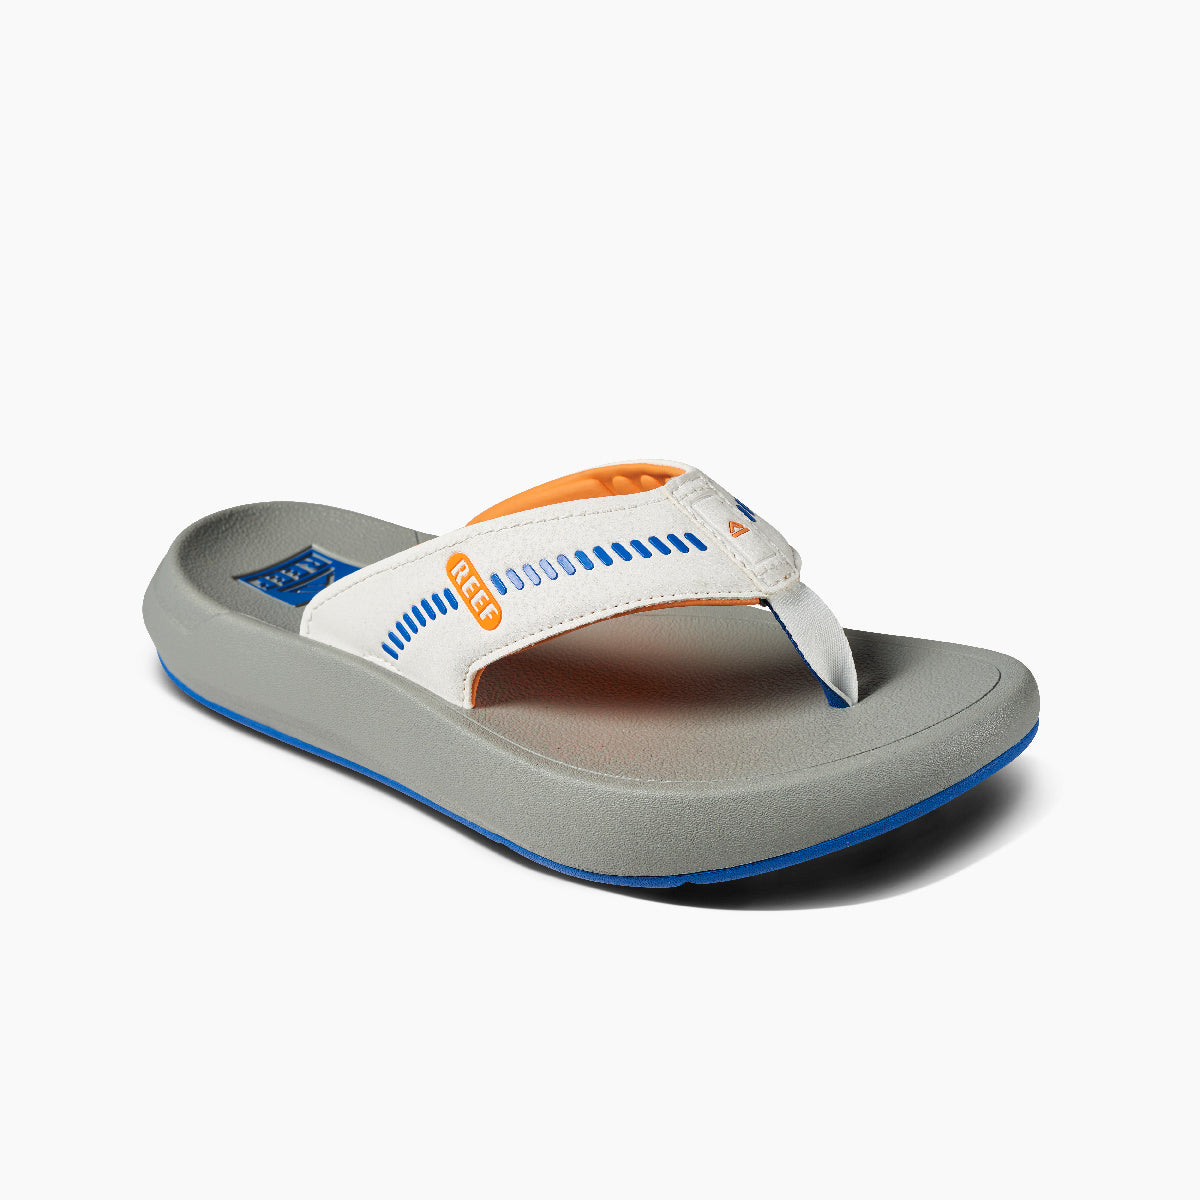 Reef Swellsole Cruiser Mens Sandal Blue-White-Orange 10